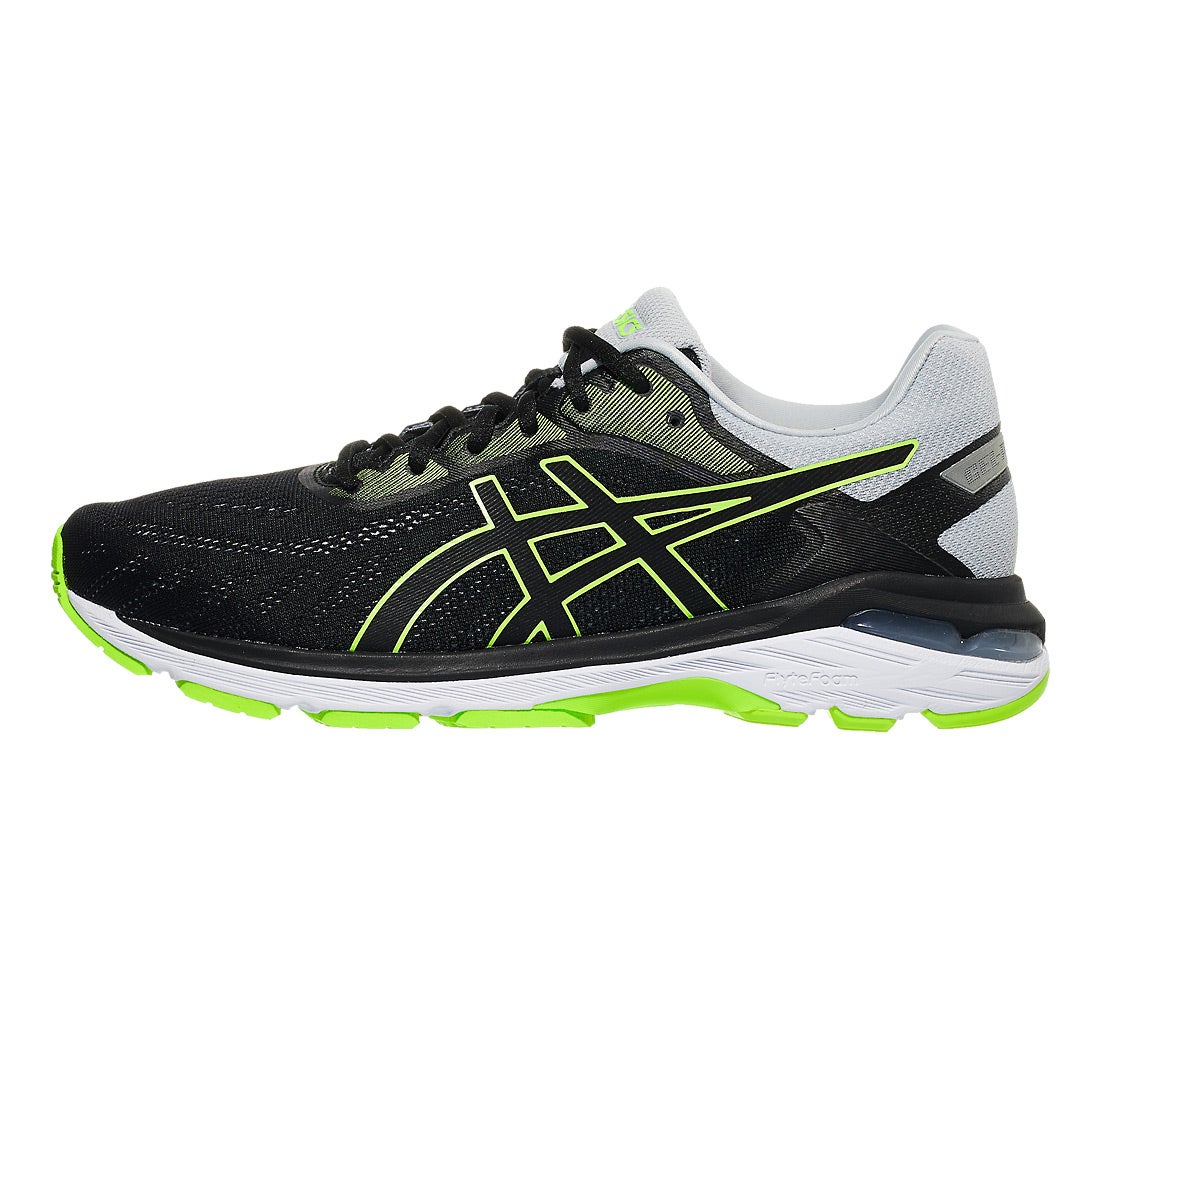 ASICS Gel Pursue 5 Men's Shoes Black/Hazard Green 360° View | Running ...